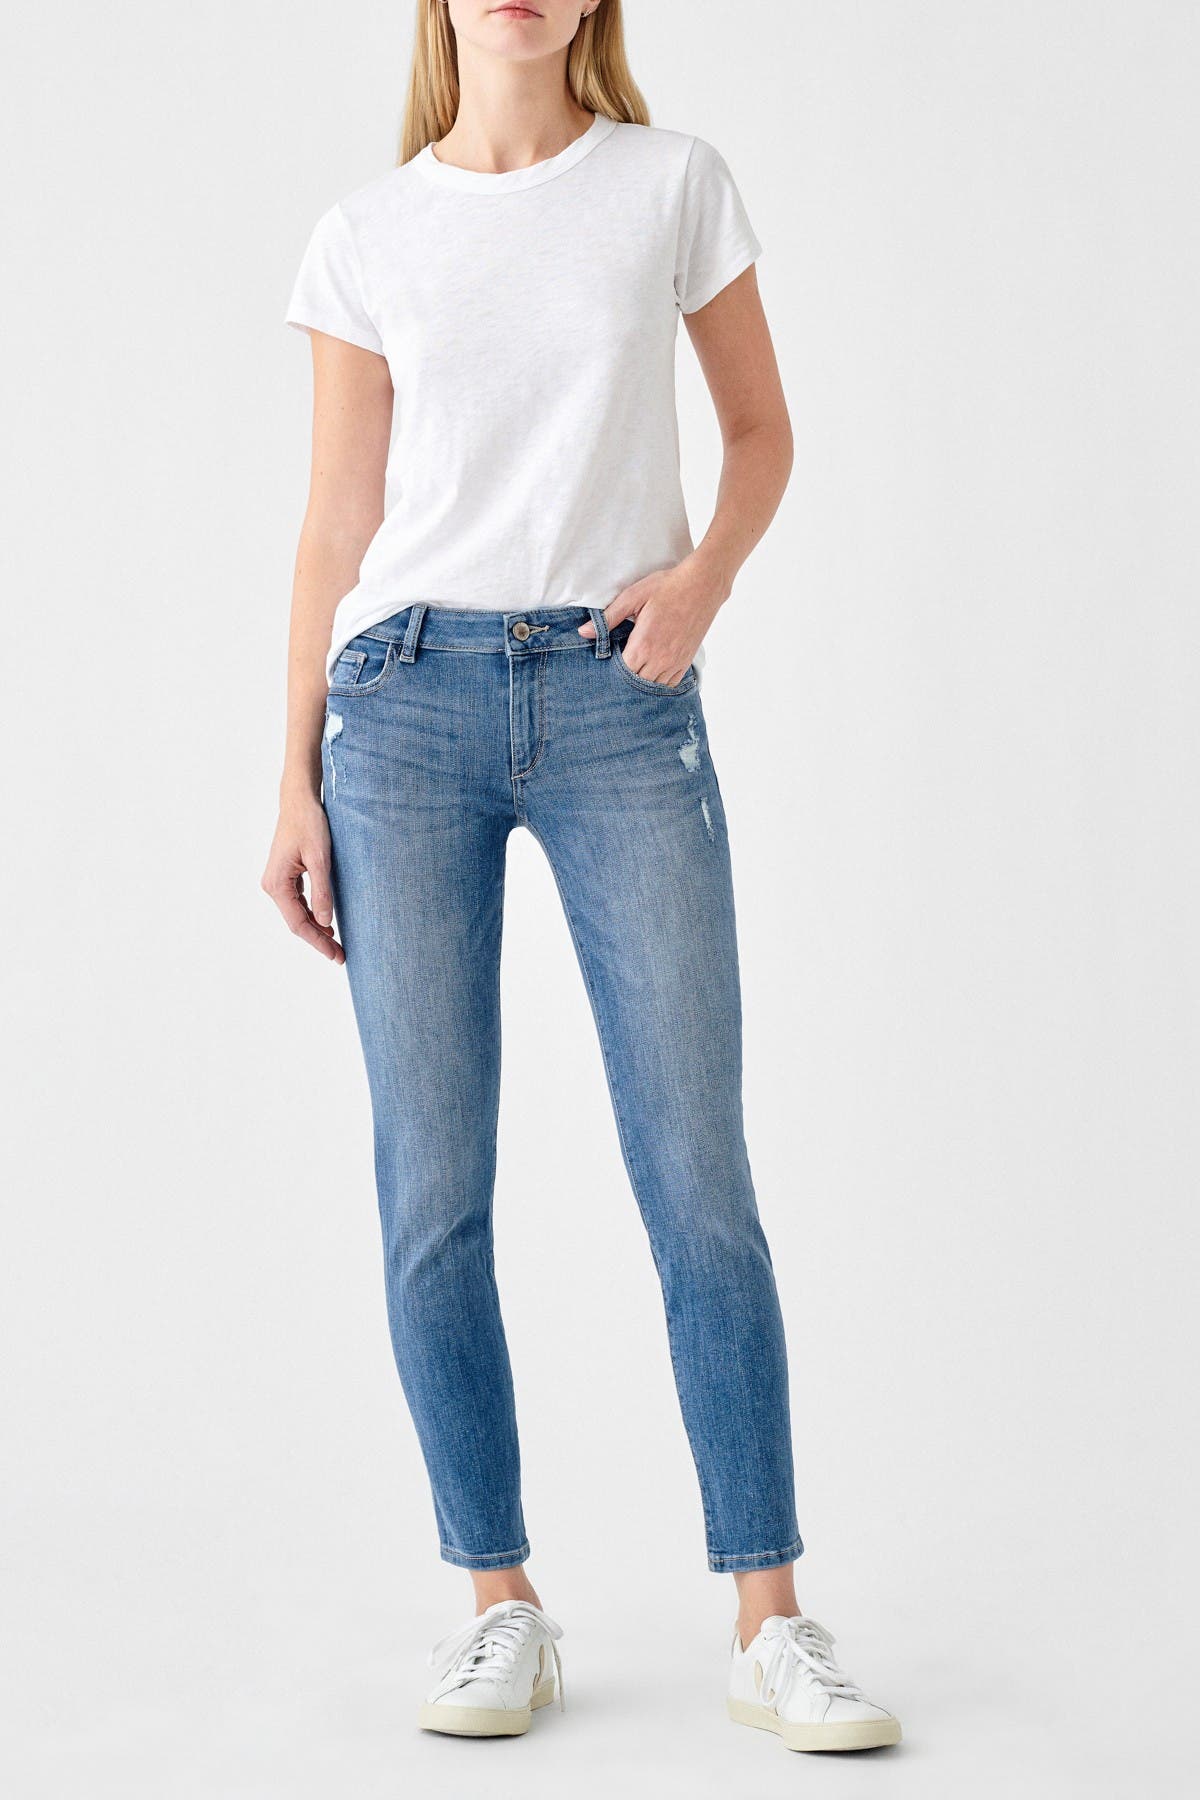 dl1961 amanda jeans